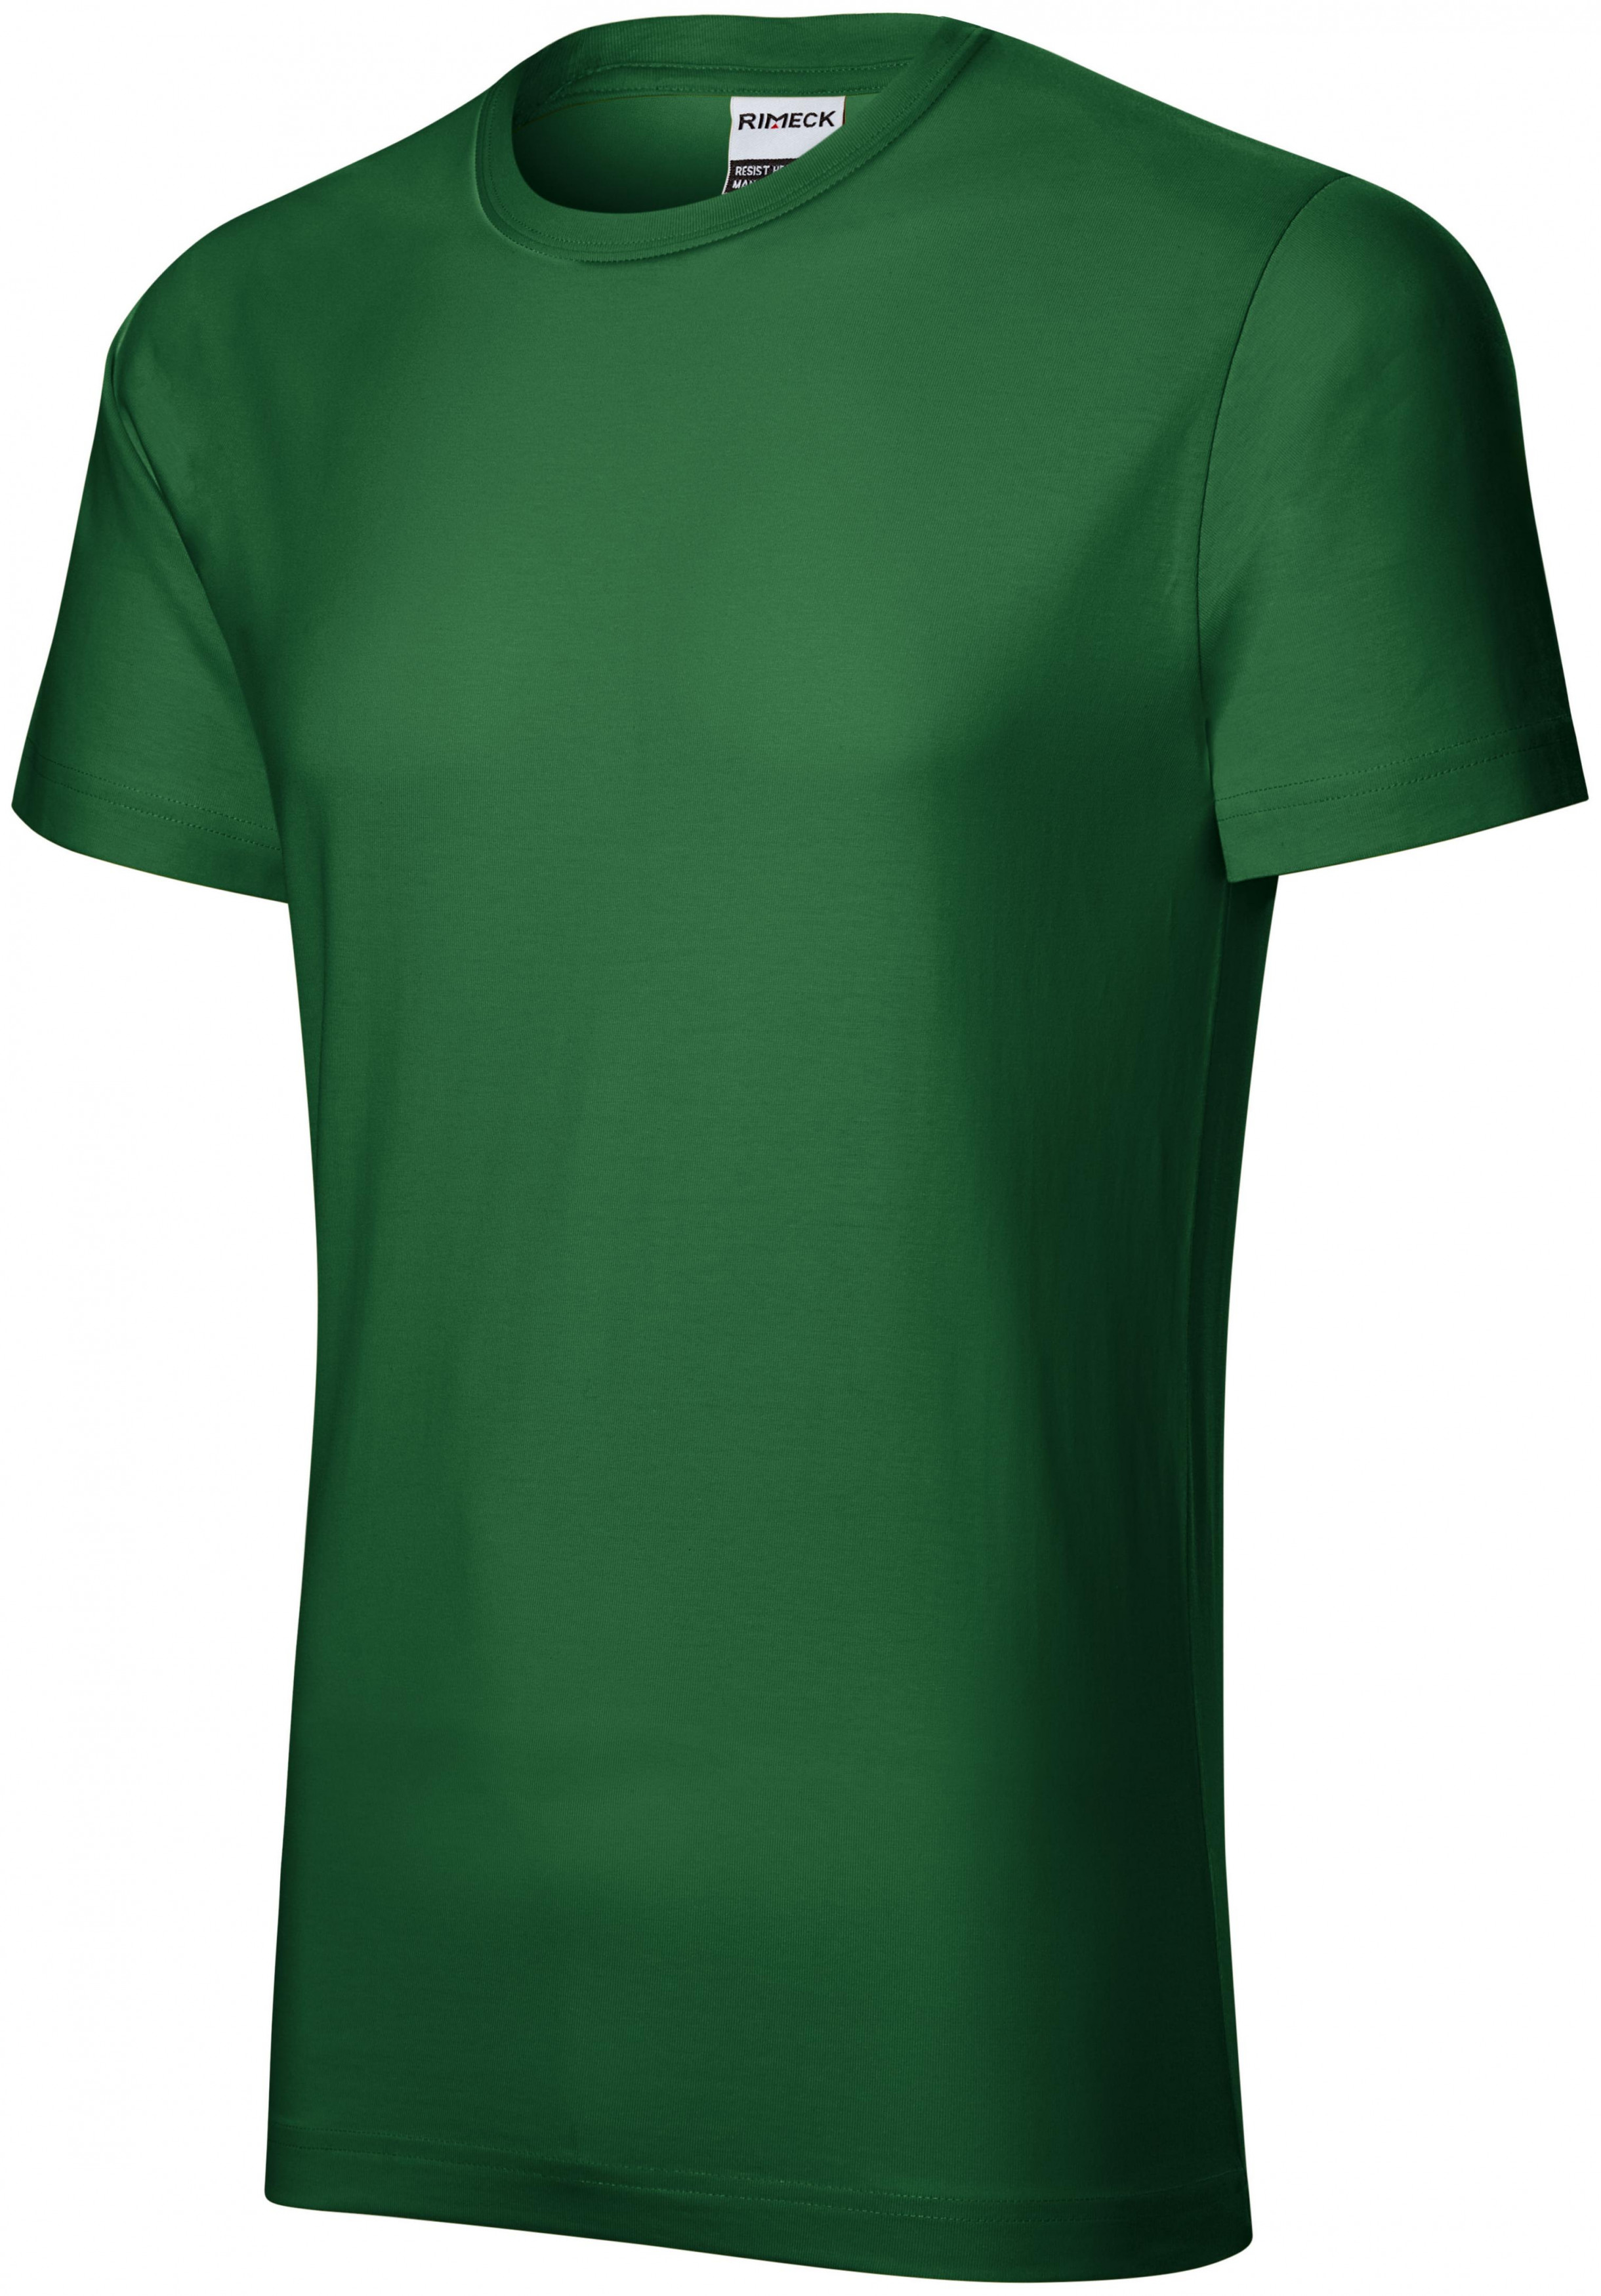 Tartós férfi póló nehezebb, üveg zöld, 2XL